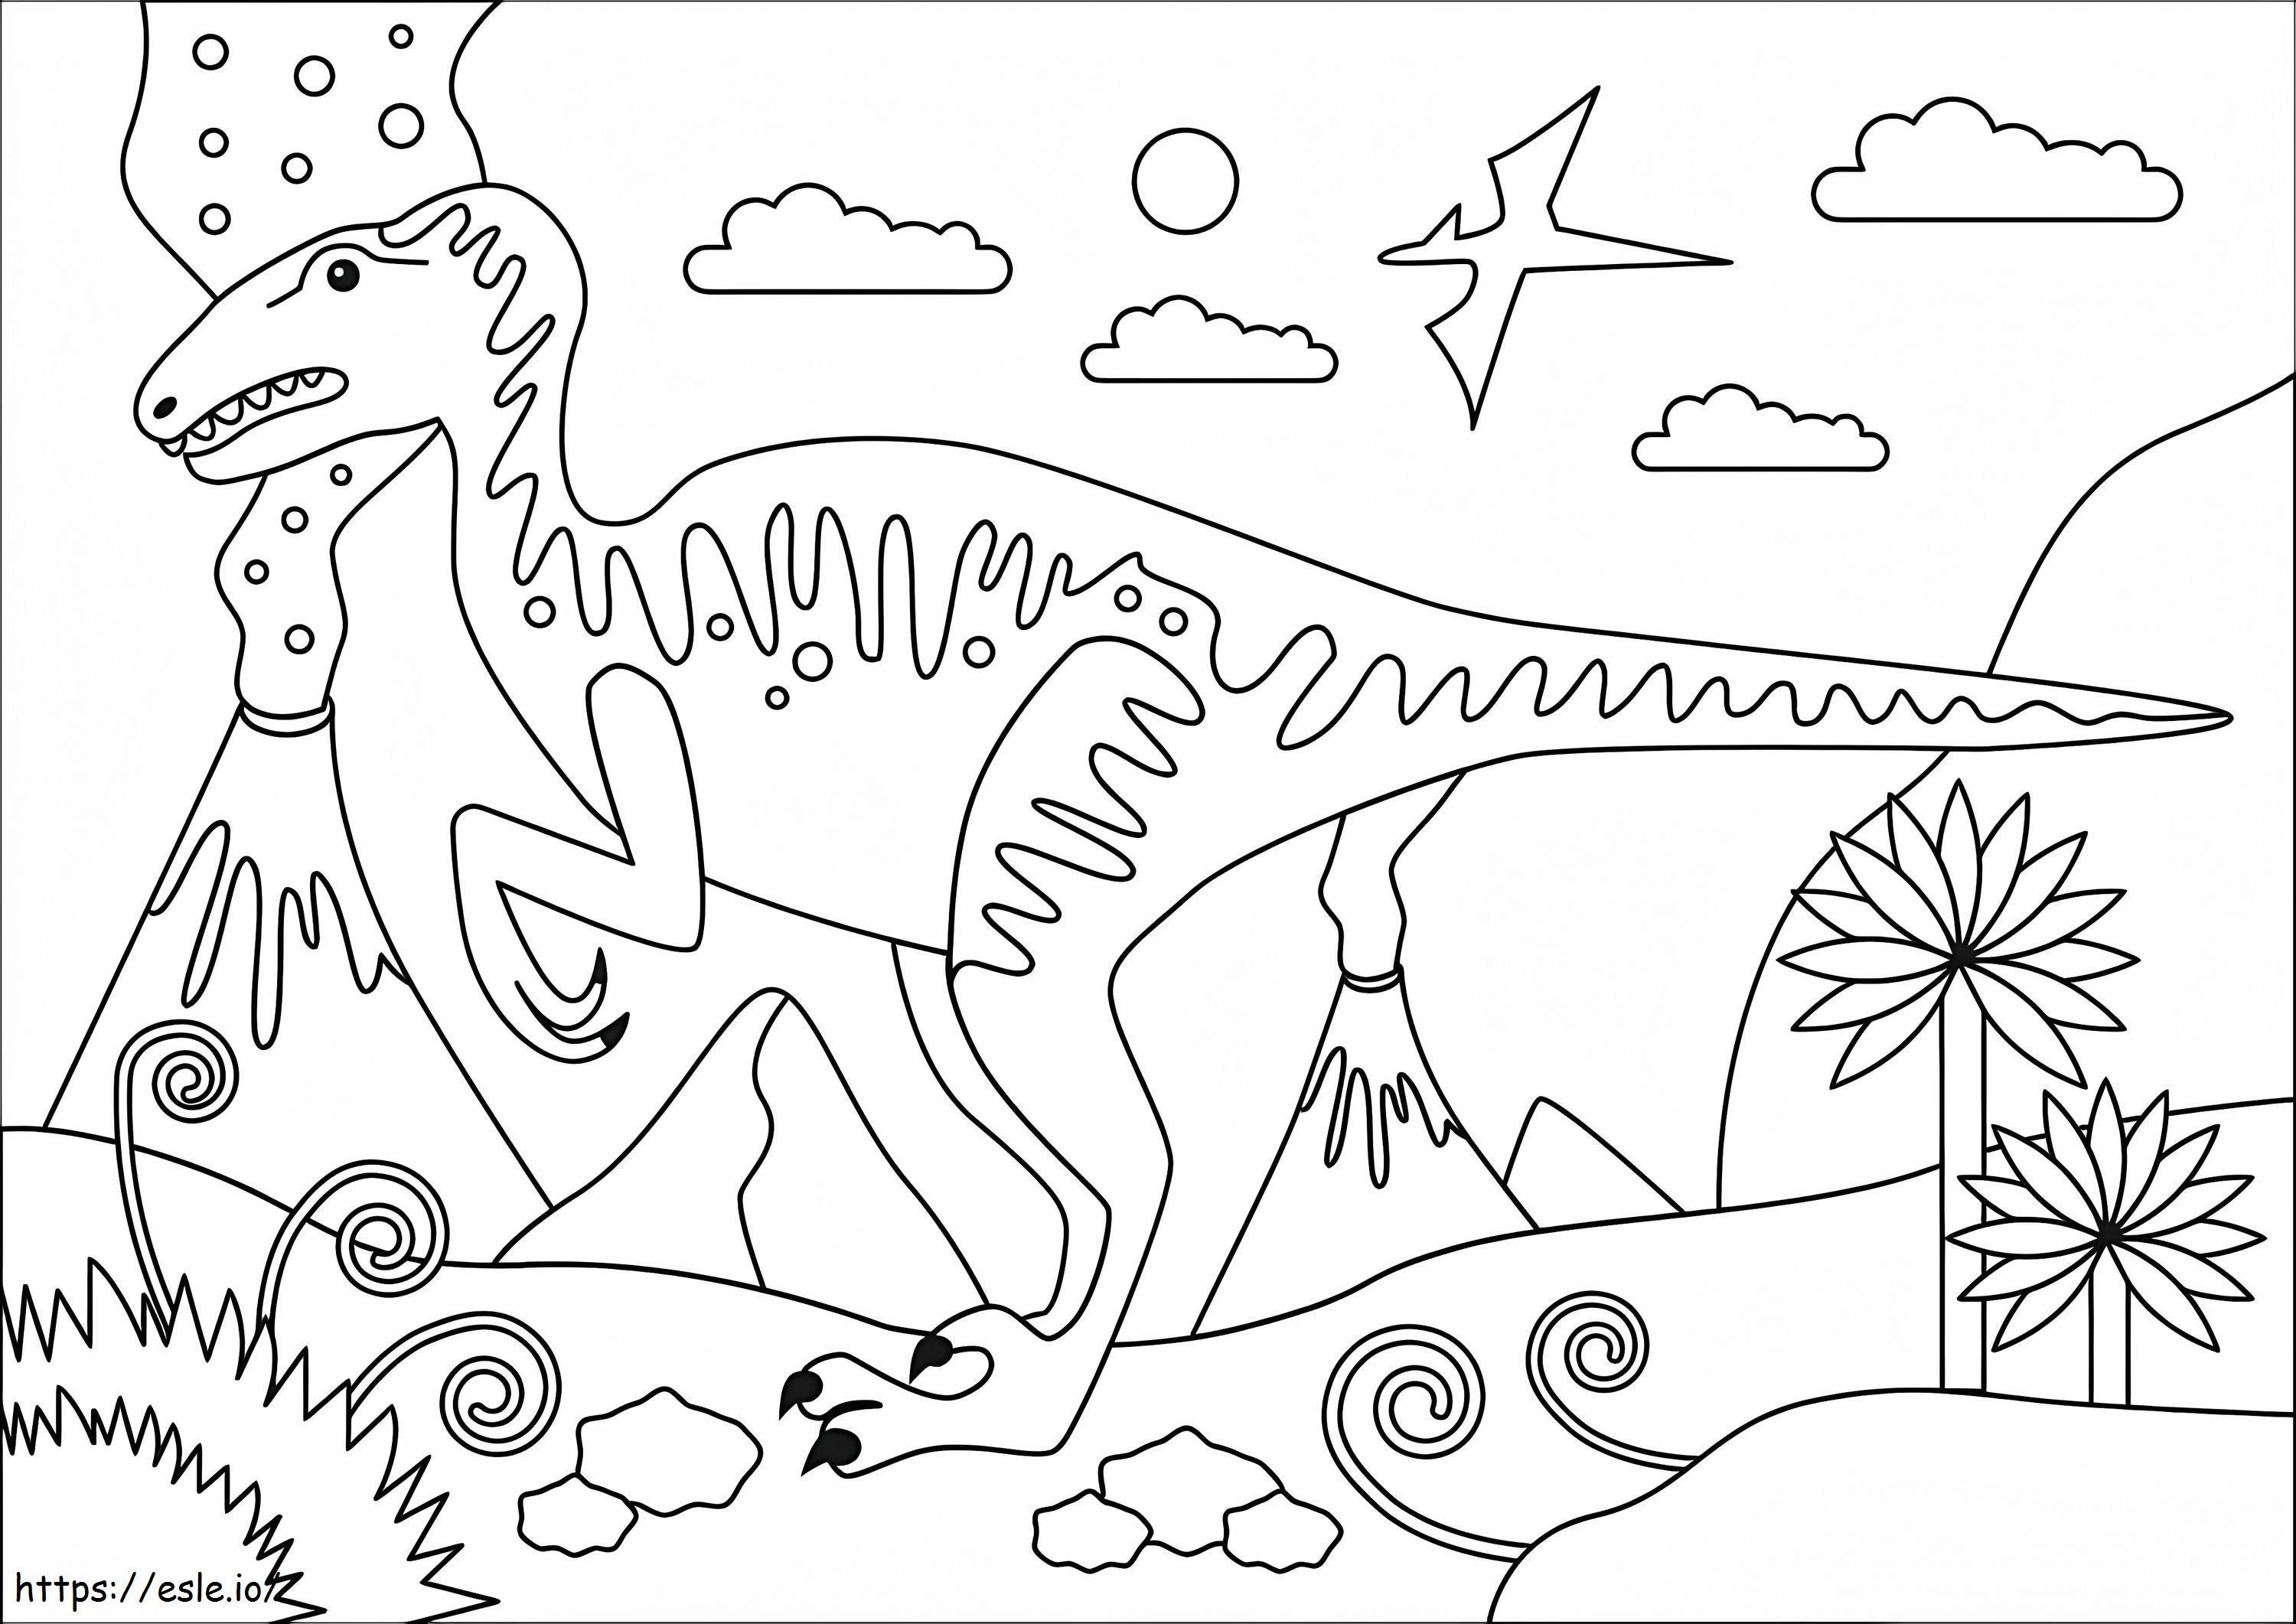 Velociraptor 2 kleurplaat kleurplaat